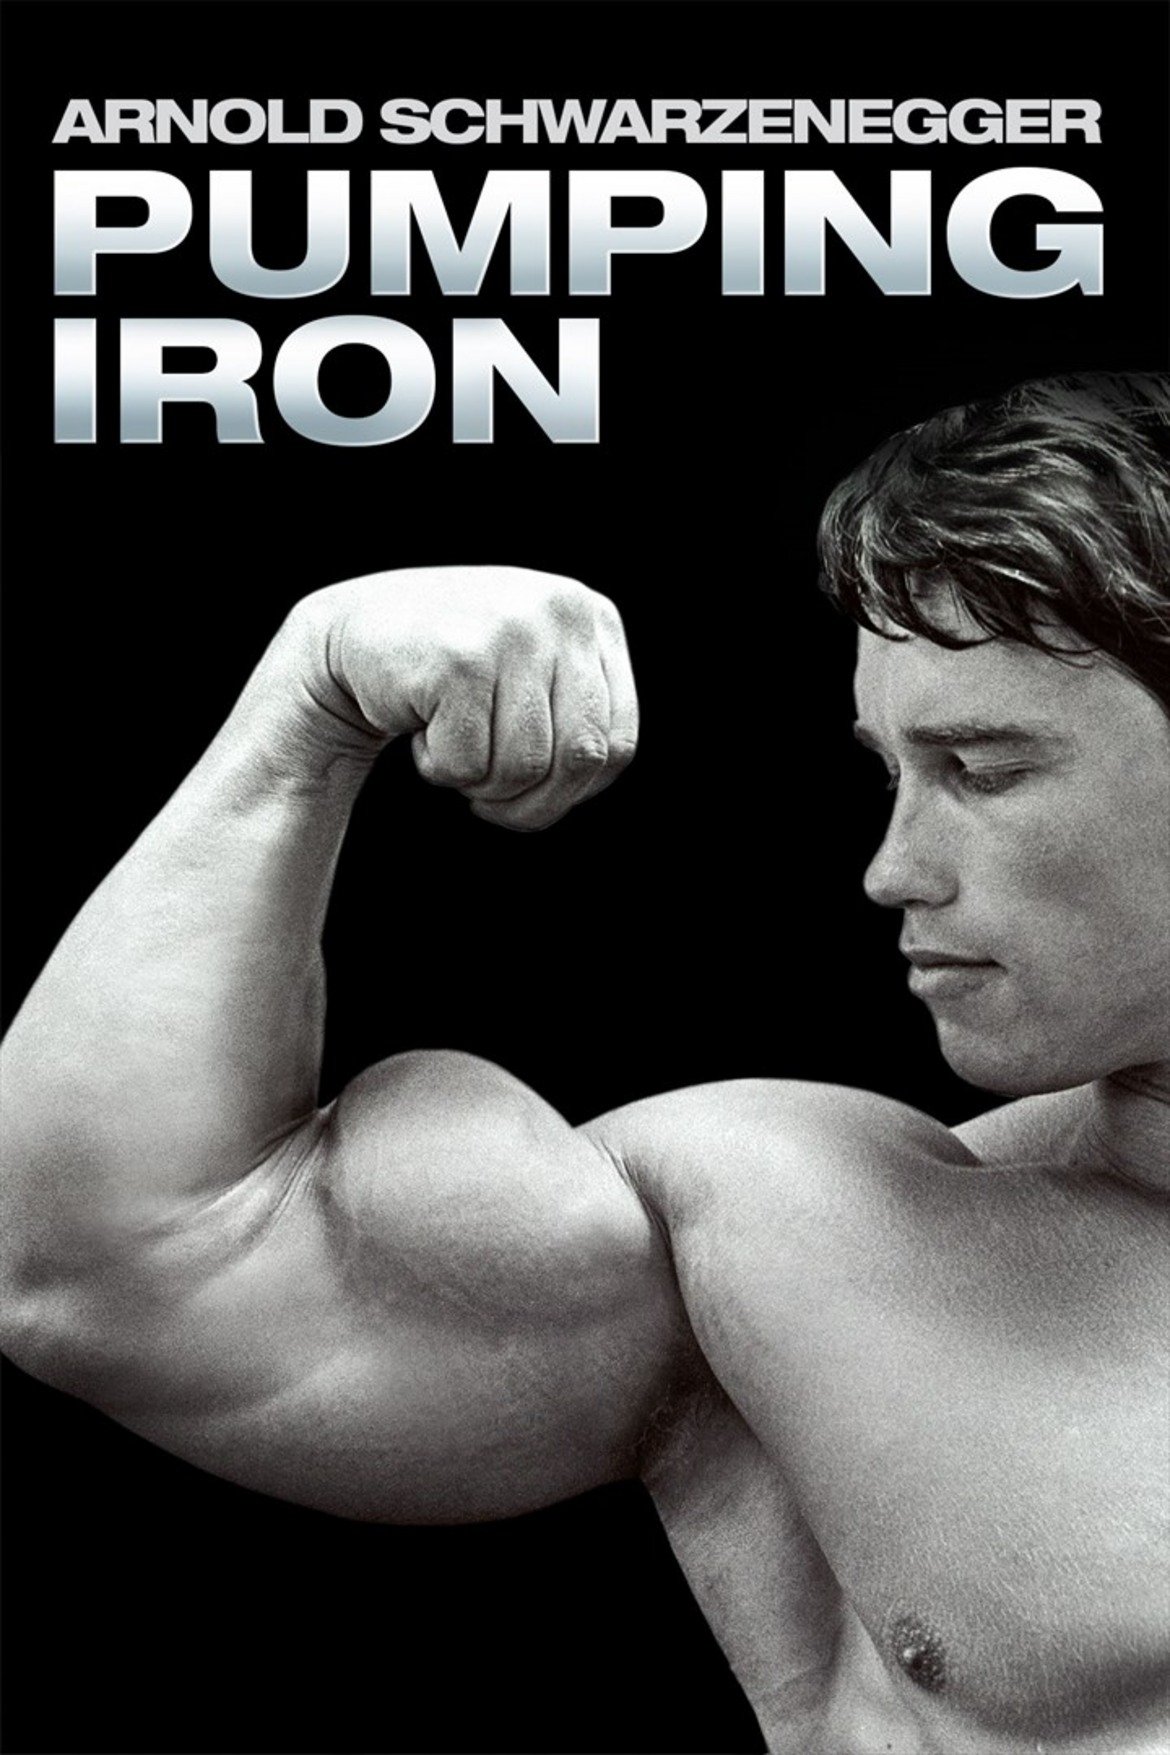 Pumping Iron

Pumping Iron е най-великият, разпознаваем, обсъждан и цитиран филм за фитнеса. Това е едновременно кадилакът, ролс-ройс-ът, „Кръстникът“ и „Гражданинът Кейн“ на киното за мускули, тренировки и тежести. Заснет е през 1975-а, но поради финансови проблеми излиза чак през 1977-а и тогава става тотален хит. Филмът проследява пътят на Арнолд Шварценегер към „Мистър Олимпия“ и „Мистър Юнивърс“ и неговия наситен със съспенс сценичен сблъсък с младия италиански гигант Лу Фериньо. Почти всички икони на желязната игра от златната епоха на 70-те години са тук. Но в центъра е Шварценегер. Тук „Австрийският дъб“ е в роля, предсказваща идващия холивудски триумф и играе образа на остроумния, доминиращ шампион, който осмива и иронизира своите конкуренти. Тук е и легендарното интервю, в което Арнолд сравнява напомпването с оргазма.
Филмът става масивен хит и отваря вратата за фитнес манията в Америка през 80-те години на миналия век. Проучвания показват, че именно след излизането на Pumping Iron драматично скачат абонаментите за фитнес зали. Днес тази класика се гледа като истинско произведение на кино изкуството.